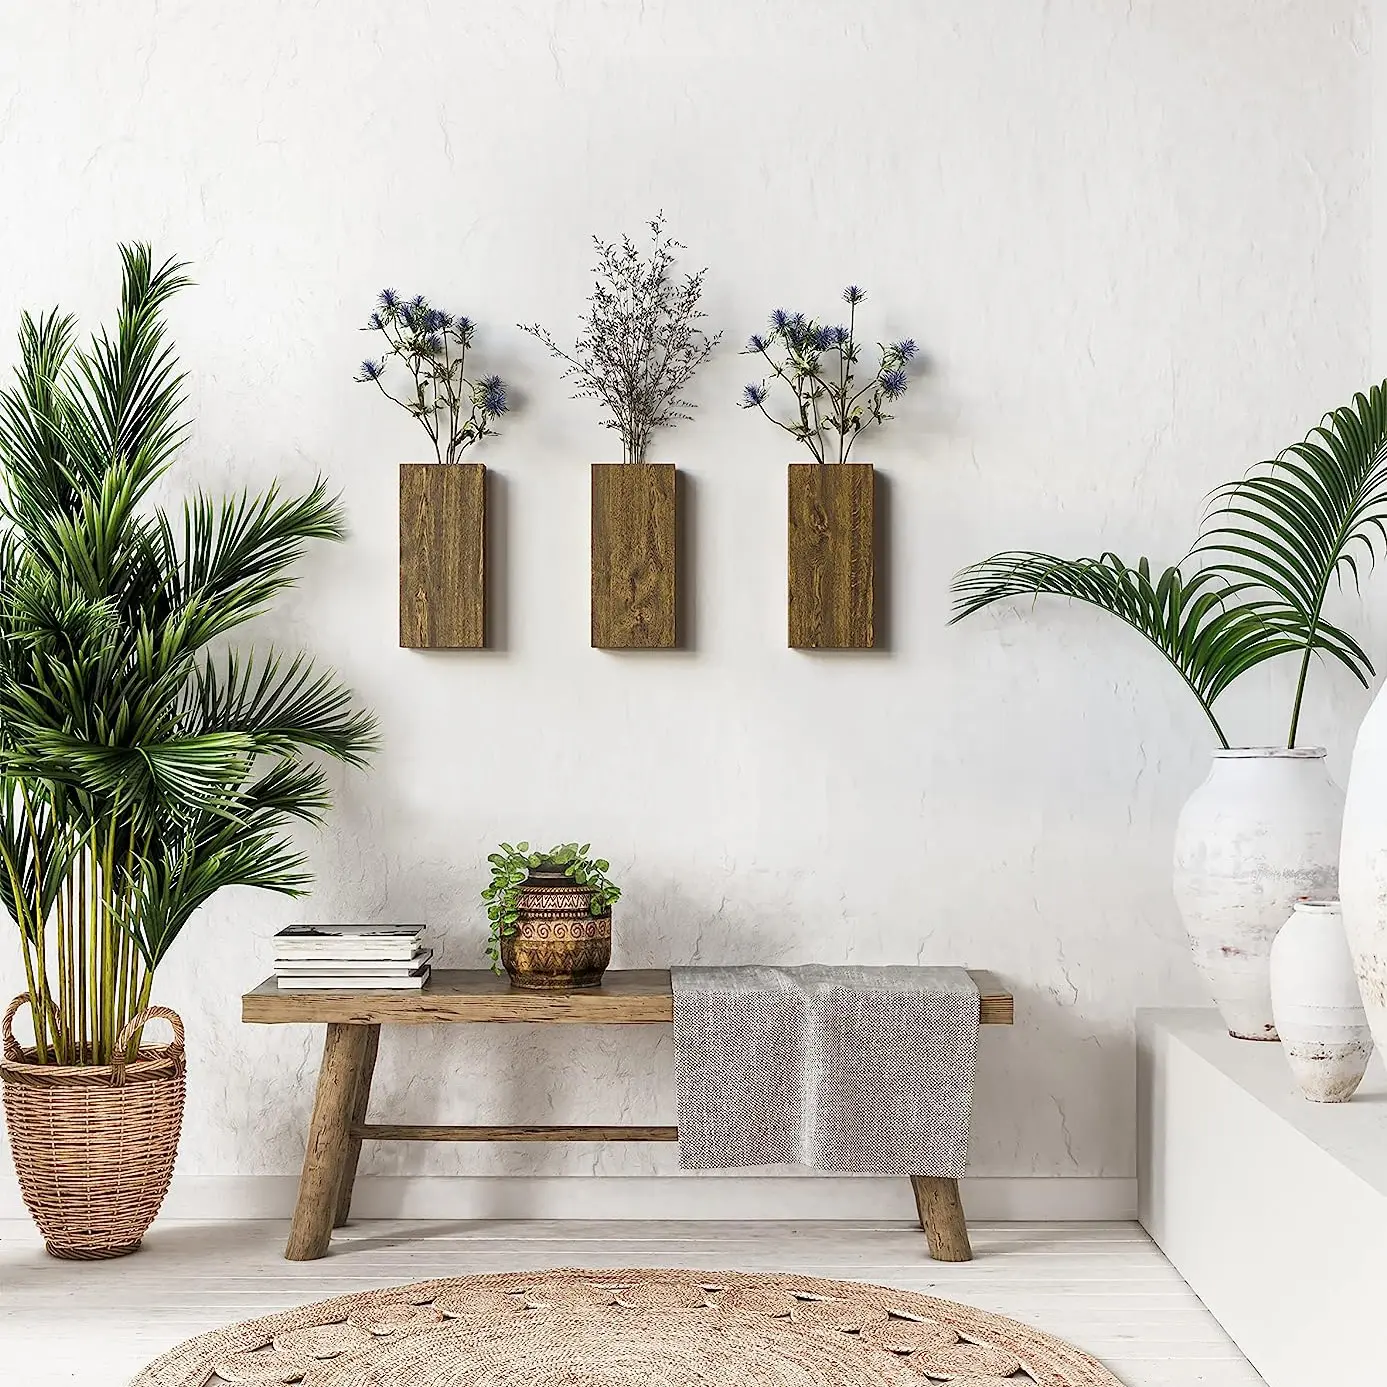 Madeira parede bolso vasos Luxo tendência Plantas interiores decorativas parede de madeira decoração rústico potes bolso